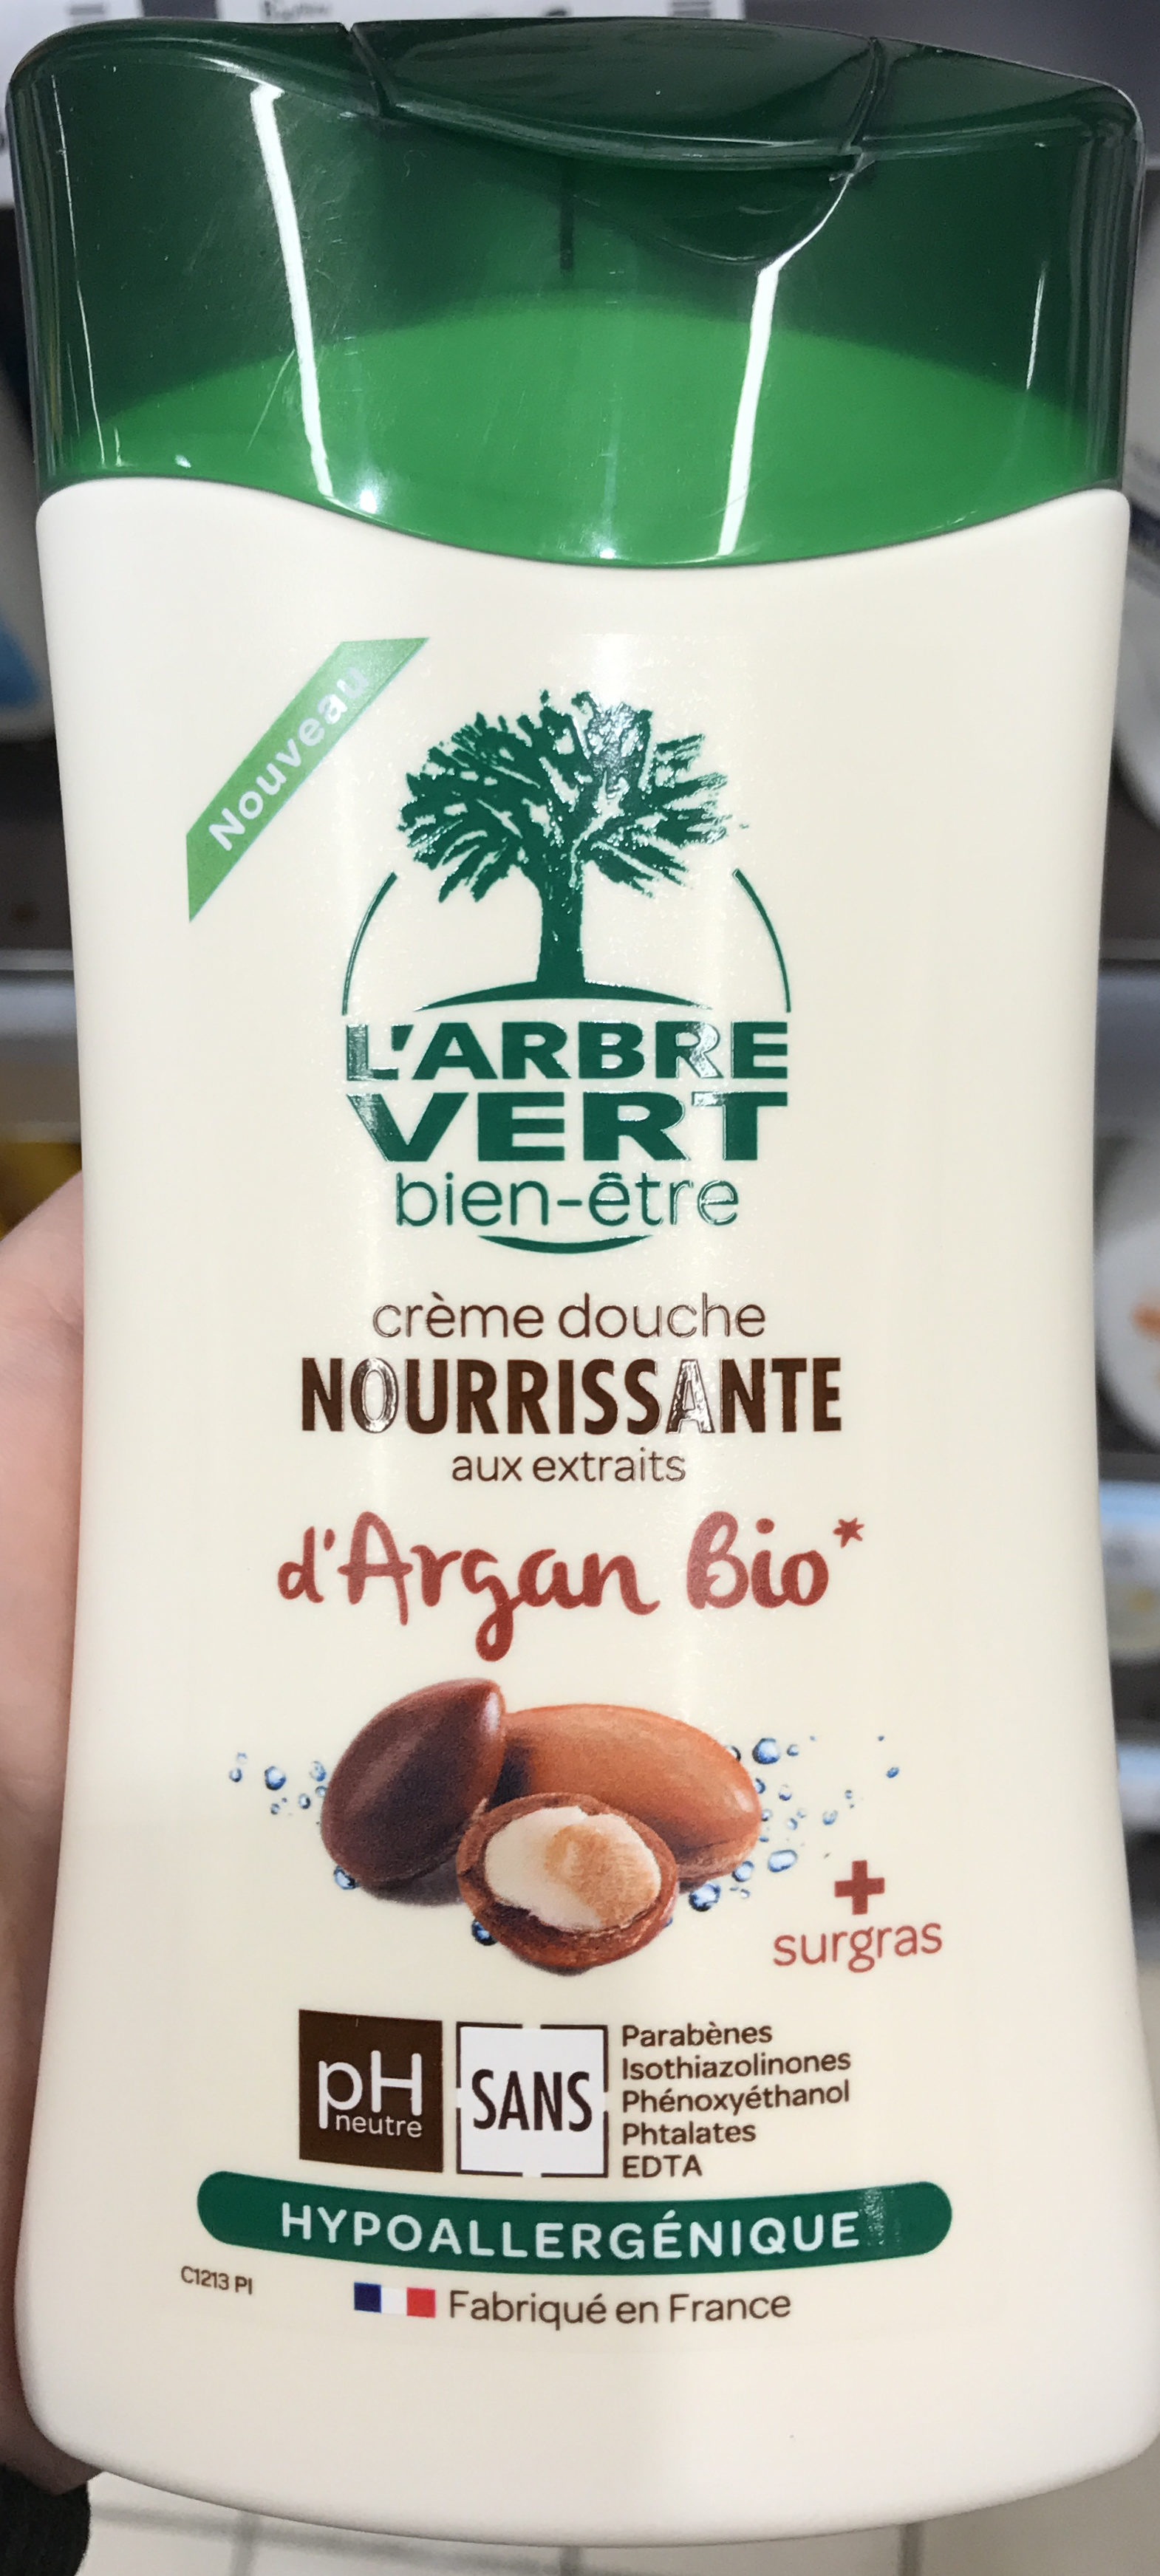 Crème douche Nourissante aux extraits d'Argan bio - Product - fr